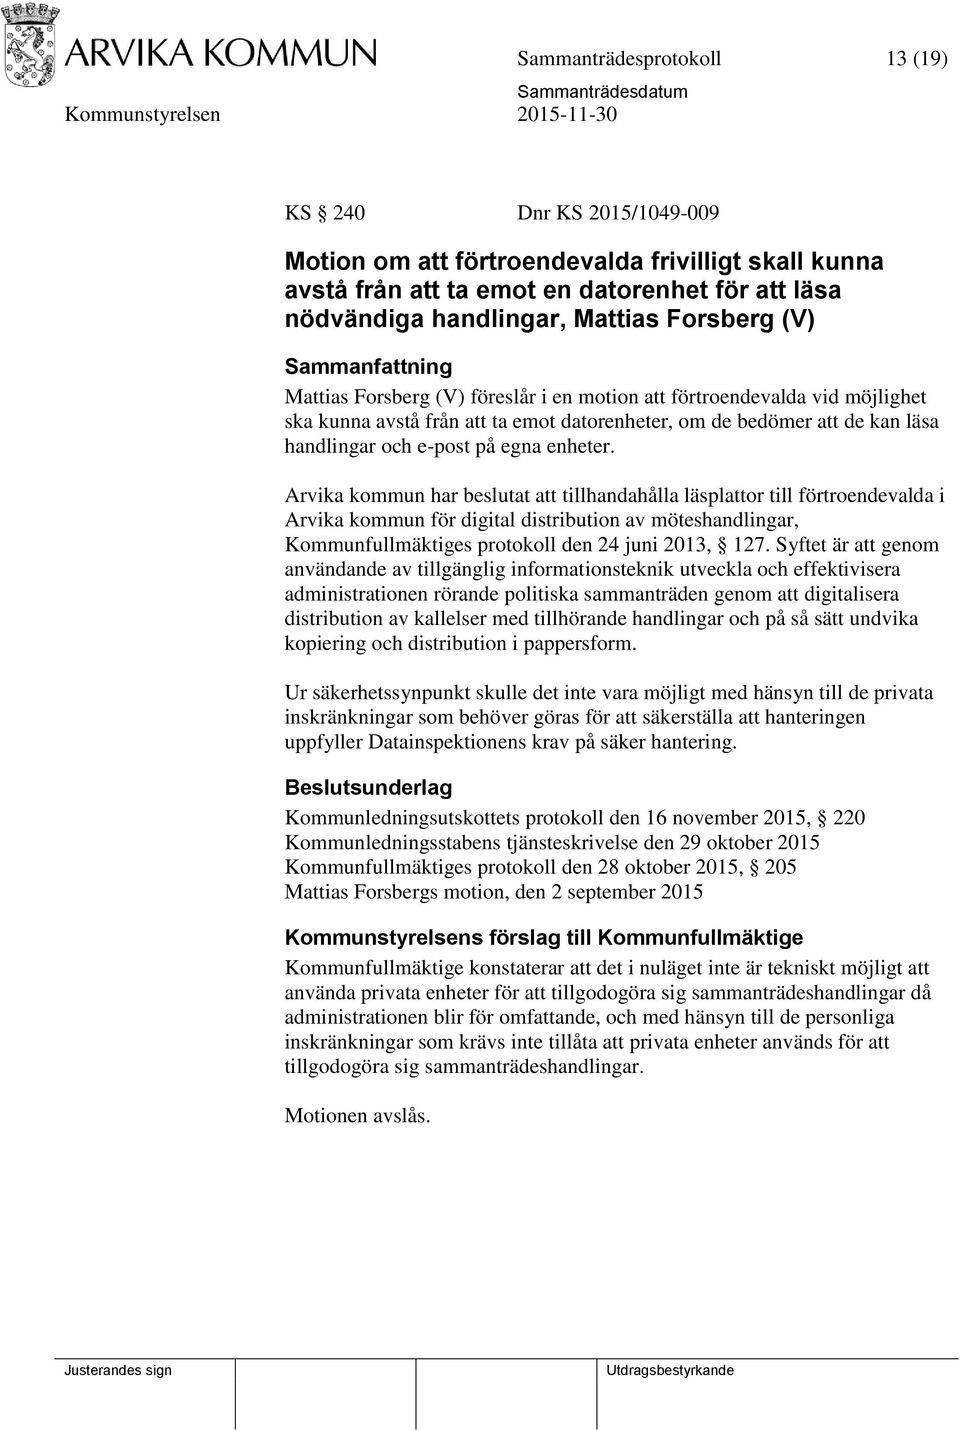 enheter. Arvika kommun har beslutat att tillhandahålla läsplattor till förtroendevalda i Arvika kommun för digital distribution av möteshandlingar, Kommunfullmäktiges protokoll den 24 juni 2013, 127.